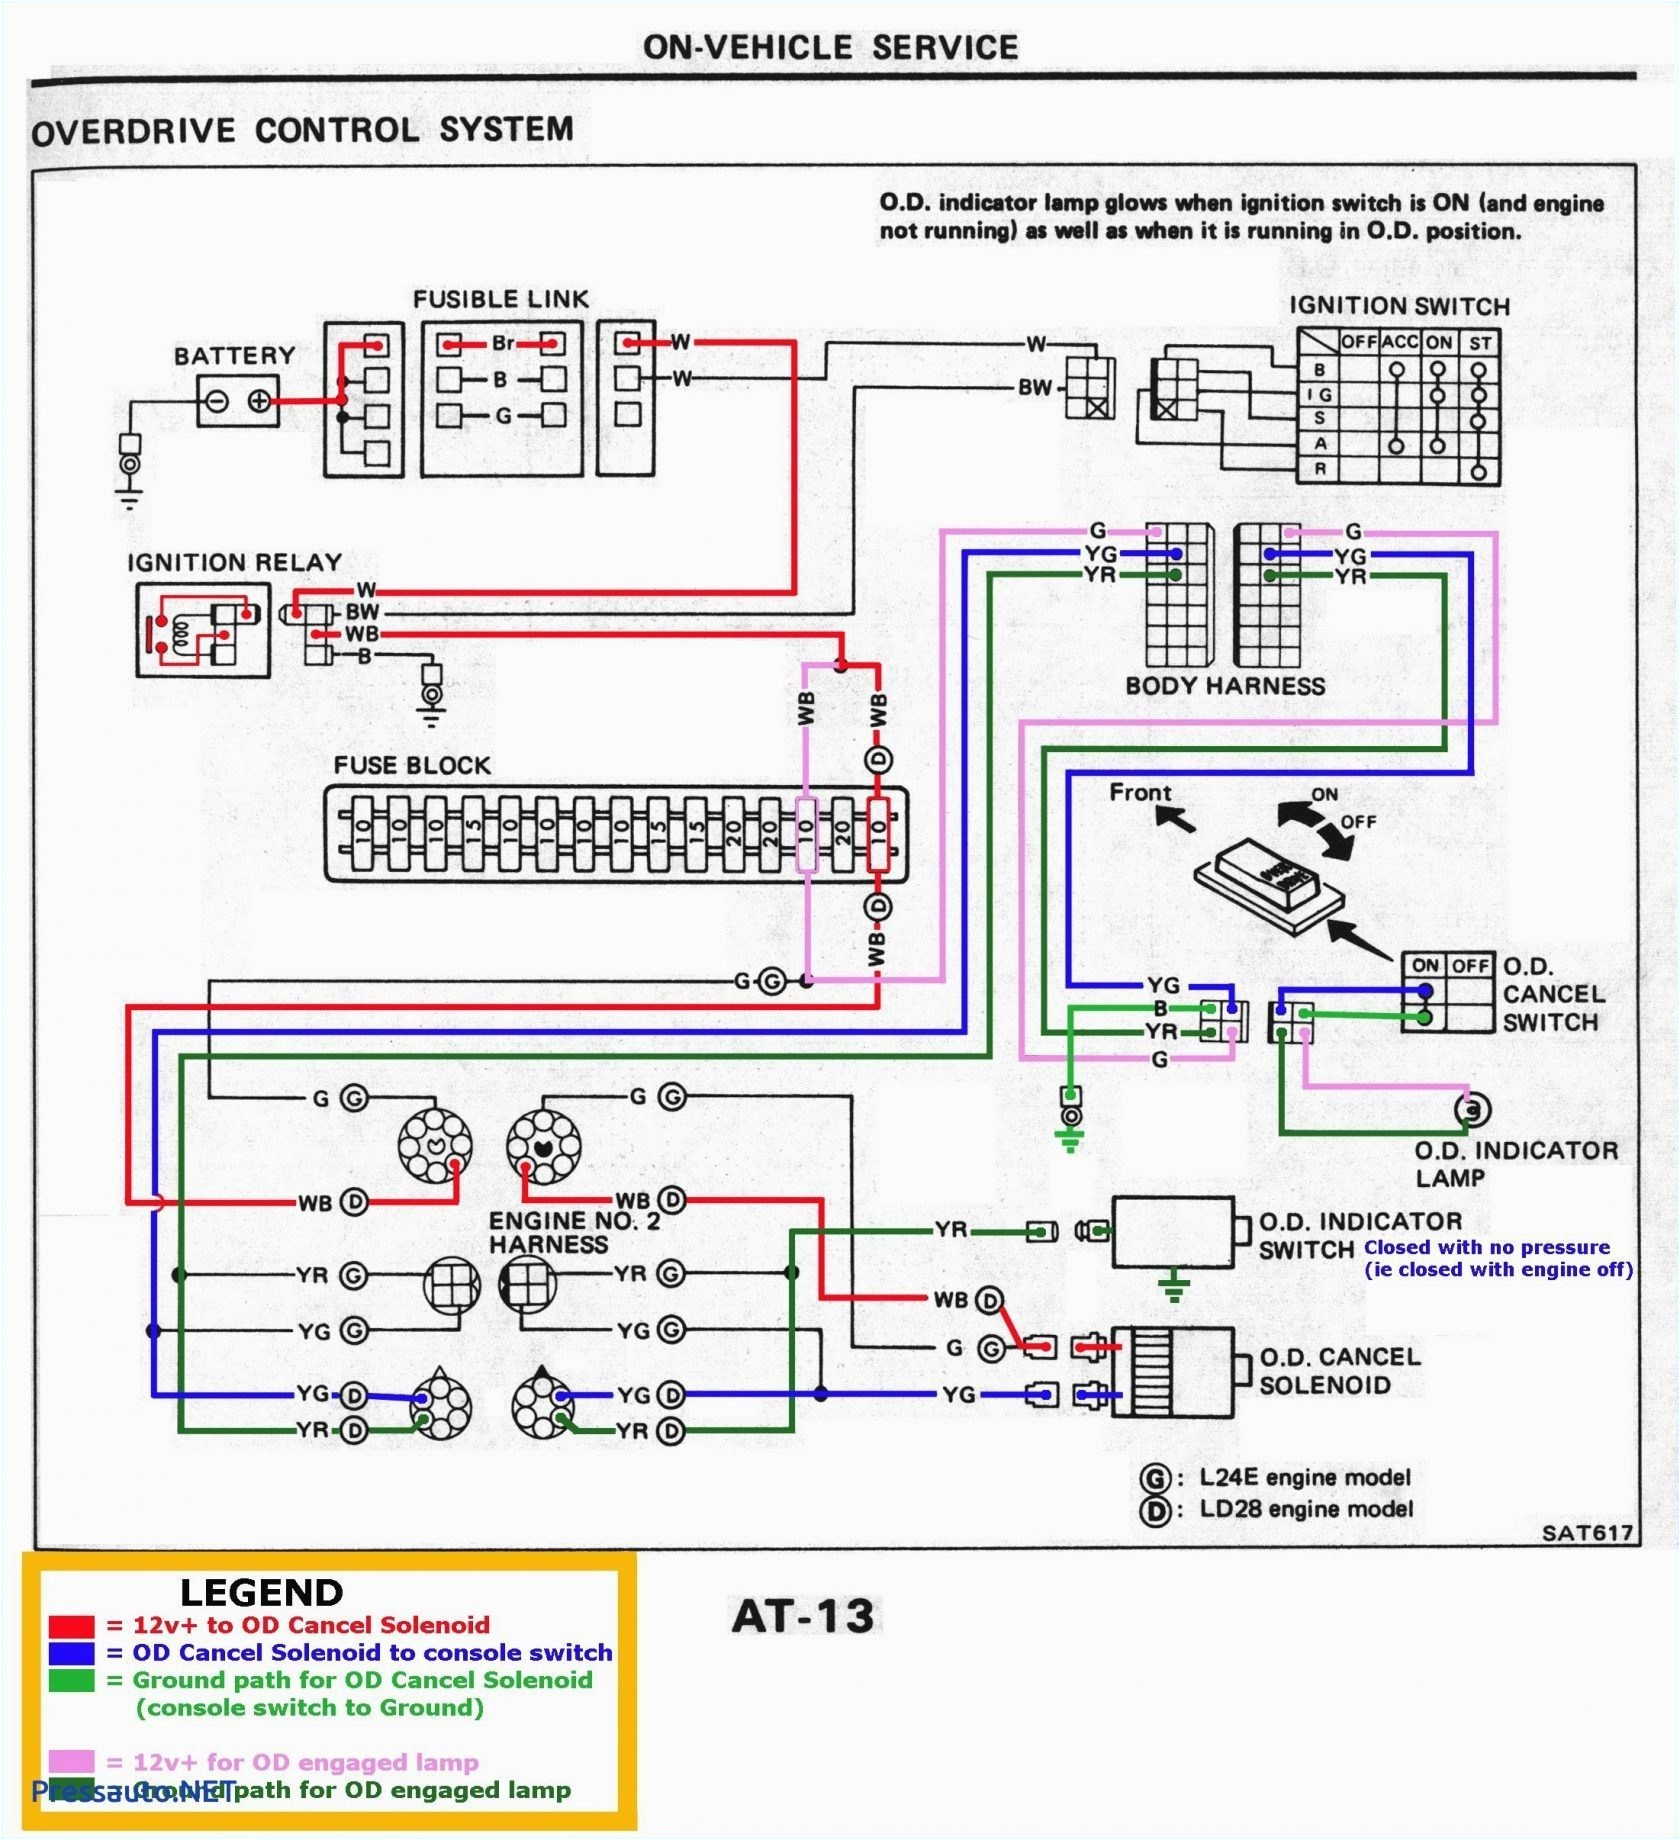 Start Run Capacitor Wiring Diagram Start Run Capacitor Wiring Diagram Samsung Rs2555bb Wiring Diagram New